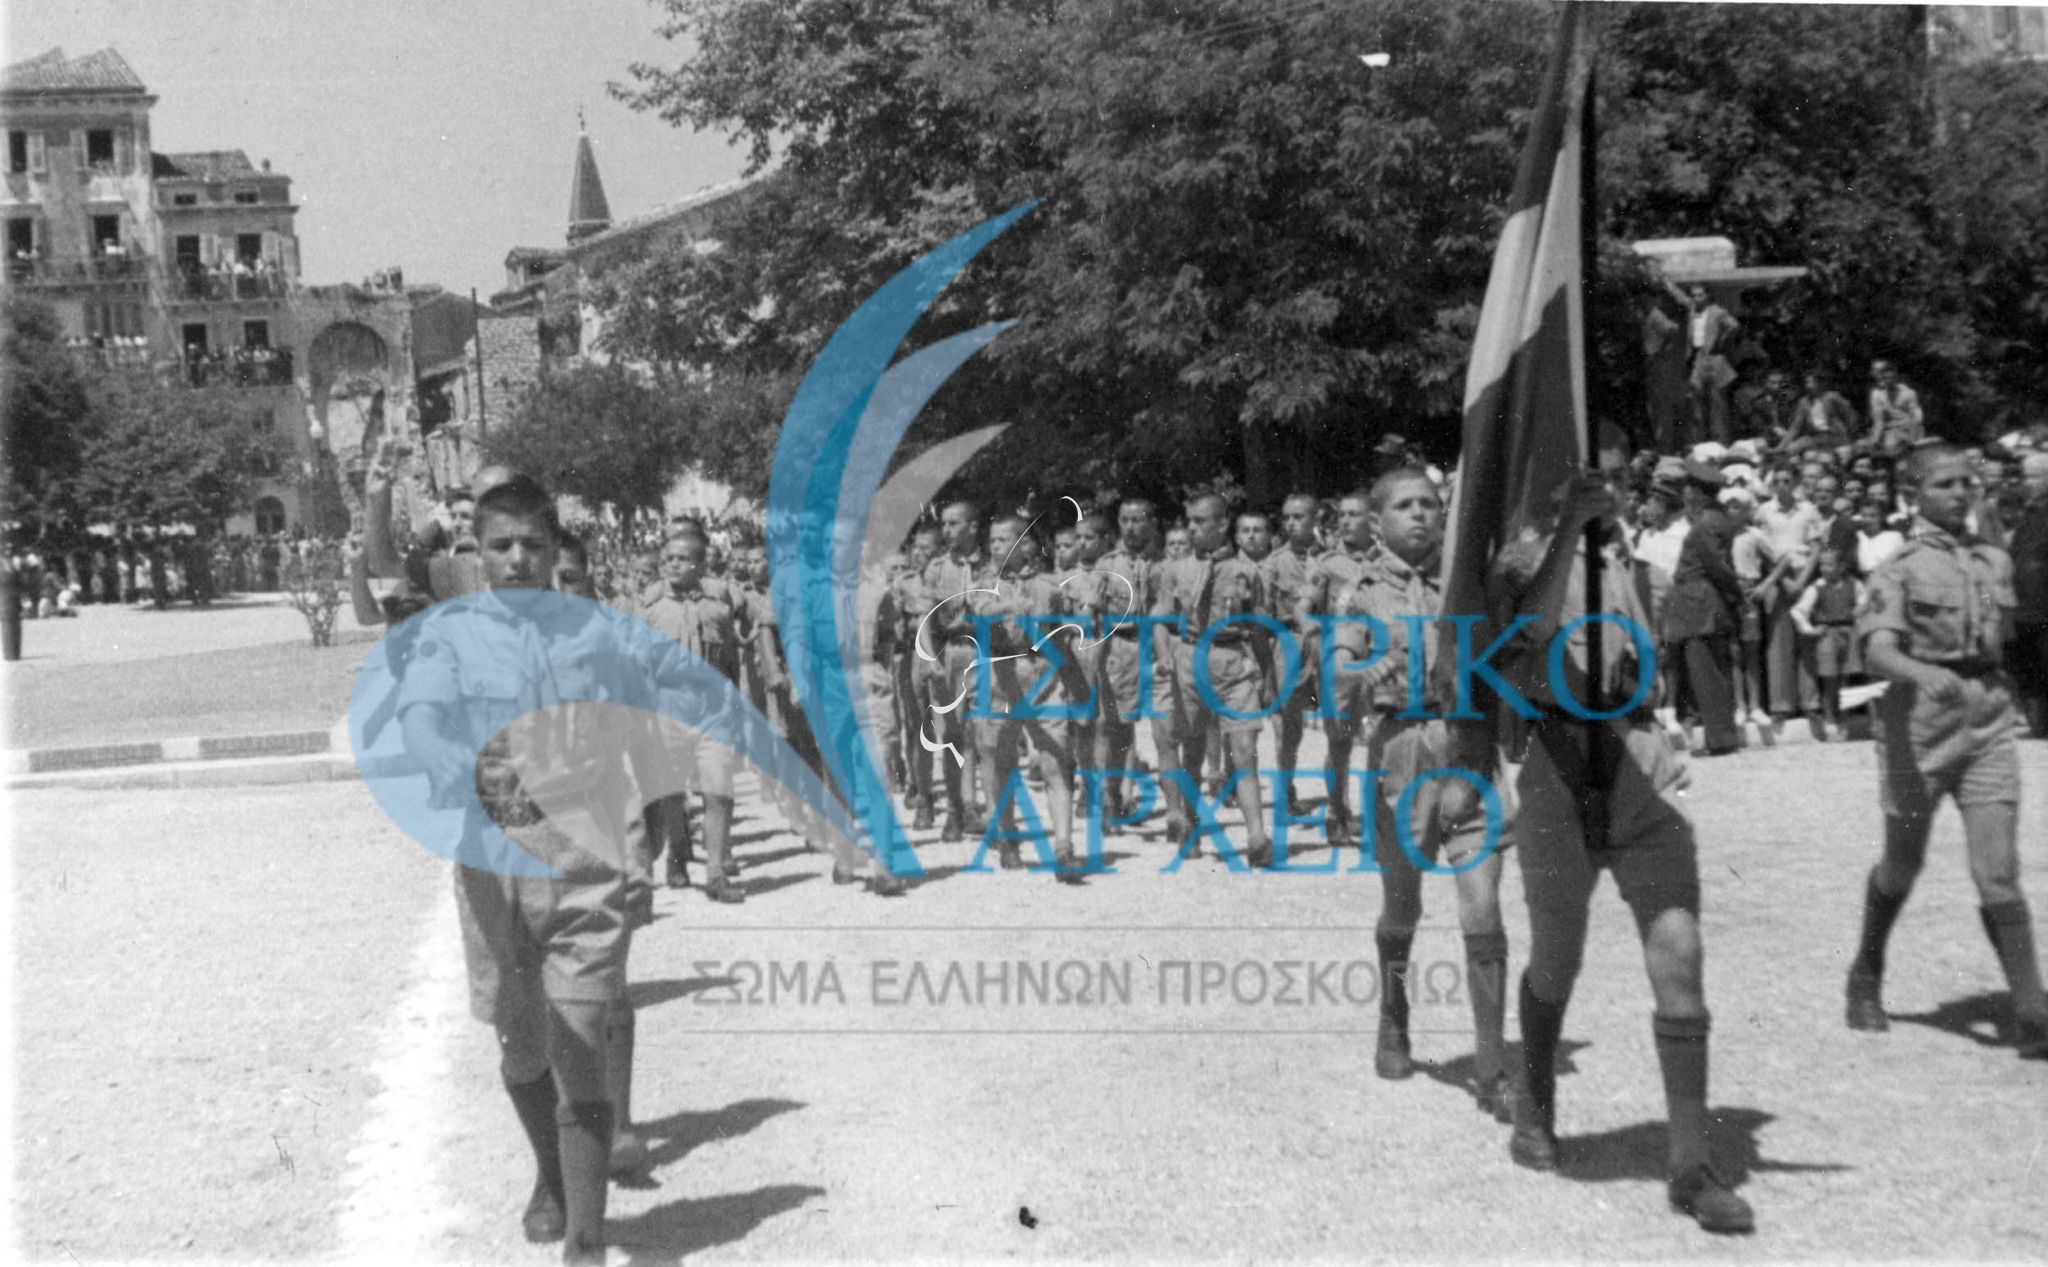 Οι πρόσκοποι της Κέρκυρας στην παρέλαση για την Ένωση των Επτανήσων στις 21 Μαίου 1950 στη Κέρκυρα.